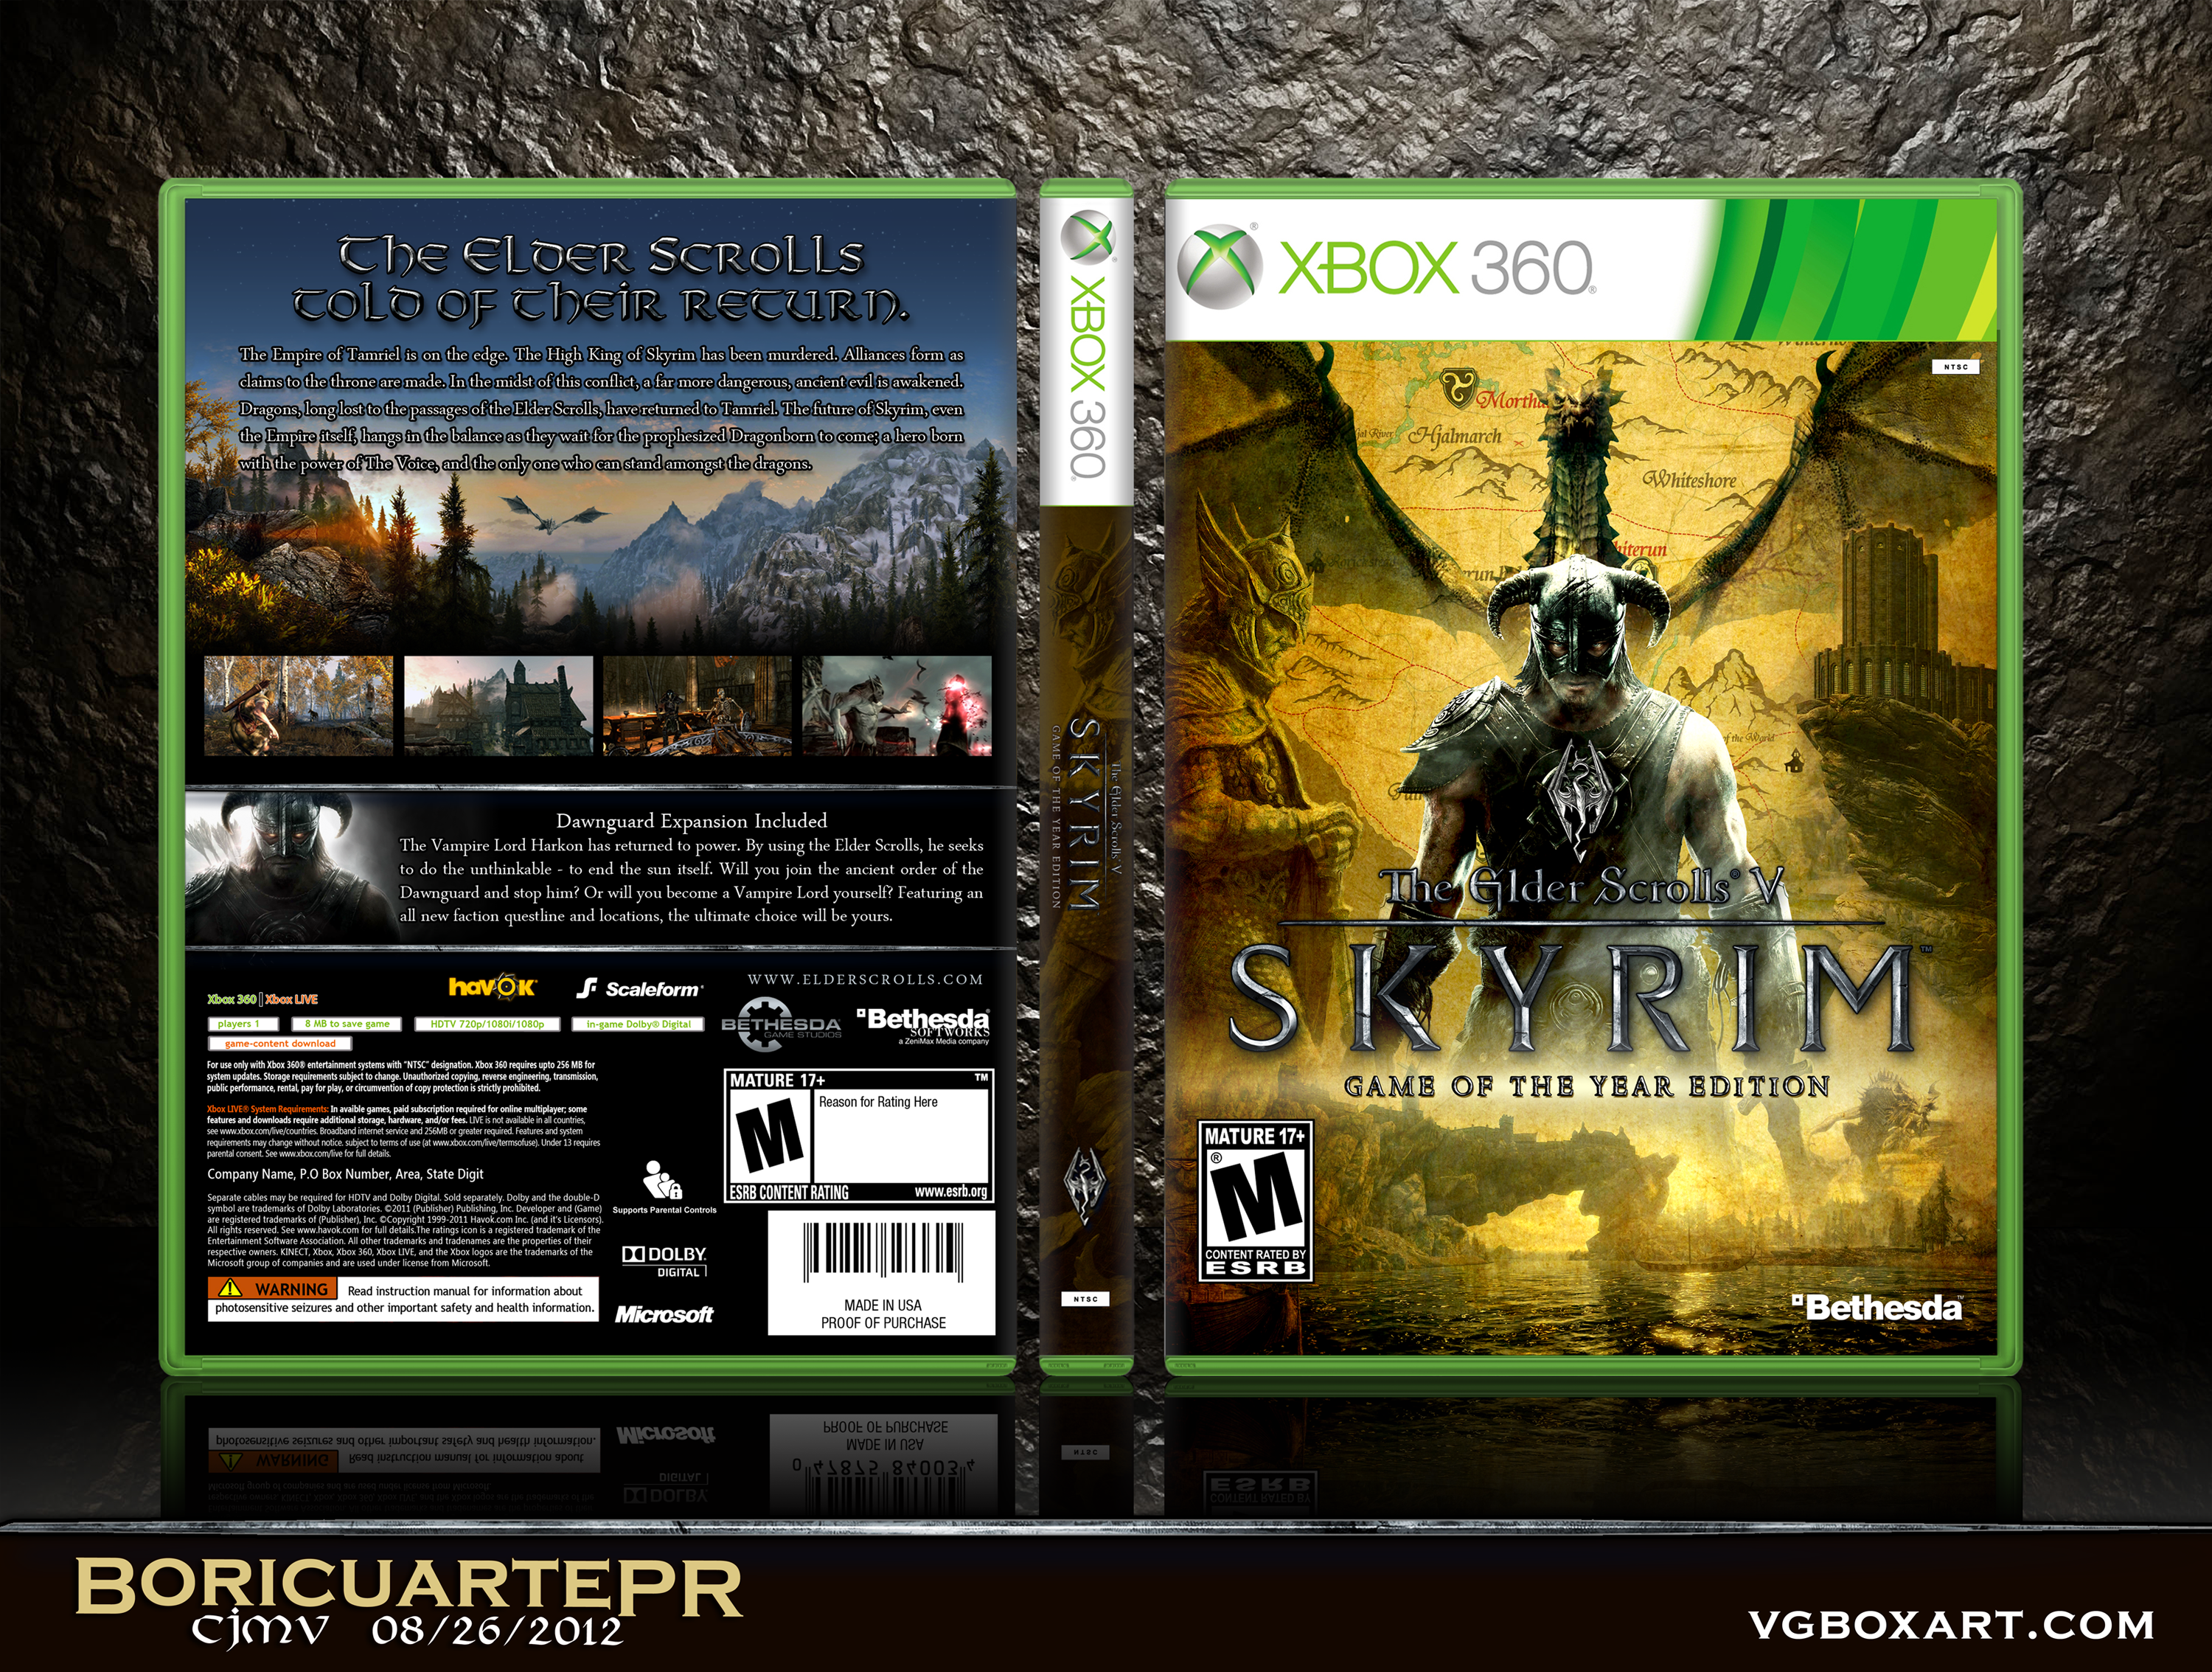 The Elder Scrolls V: Skyrim GOTY Edition box cover